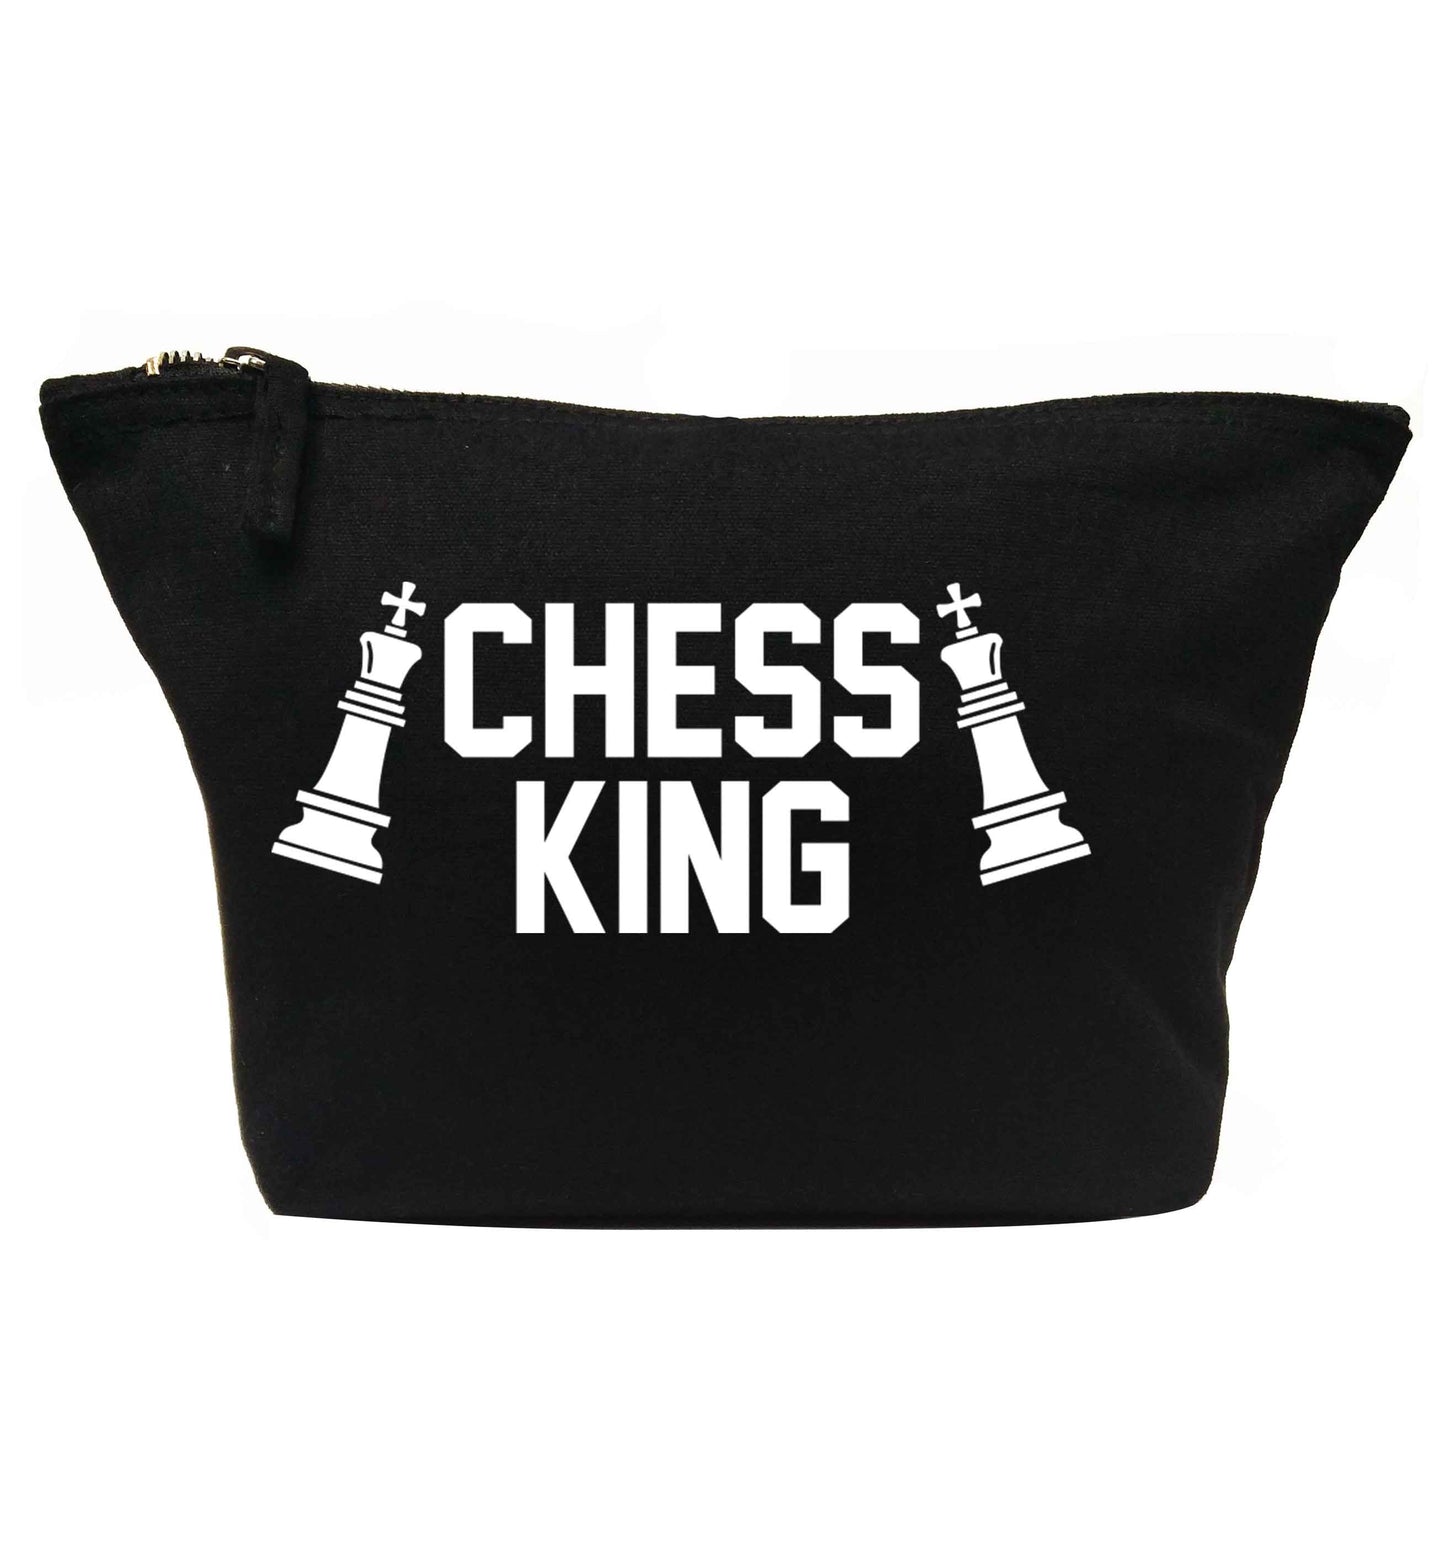 Chess king | makeup / wash bag